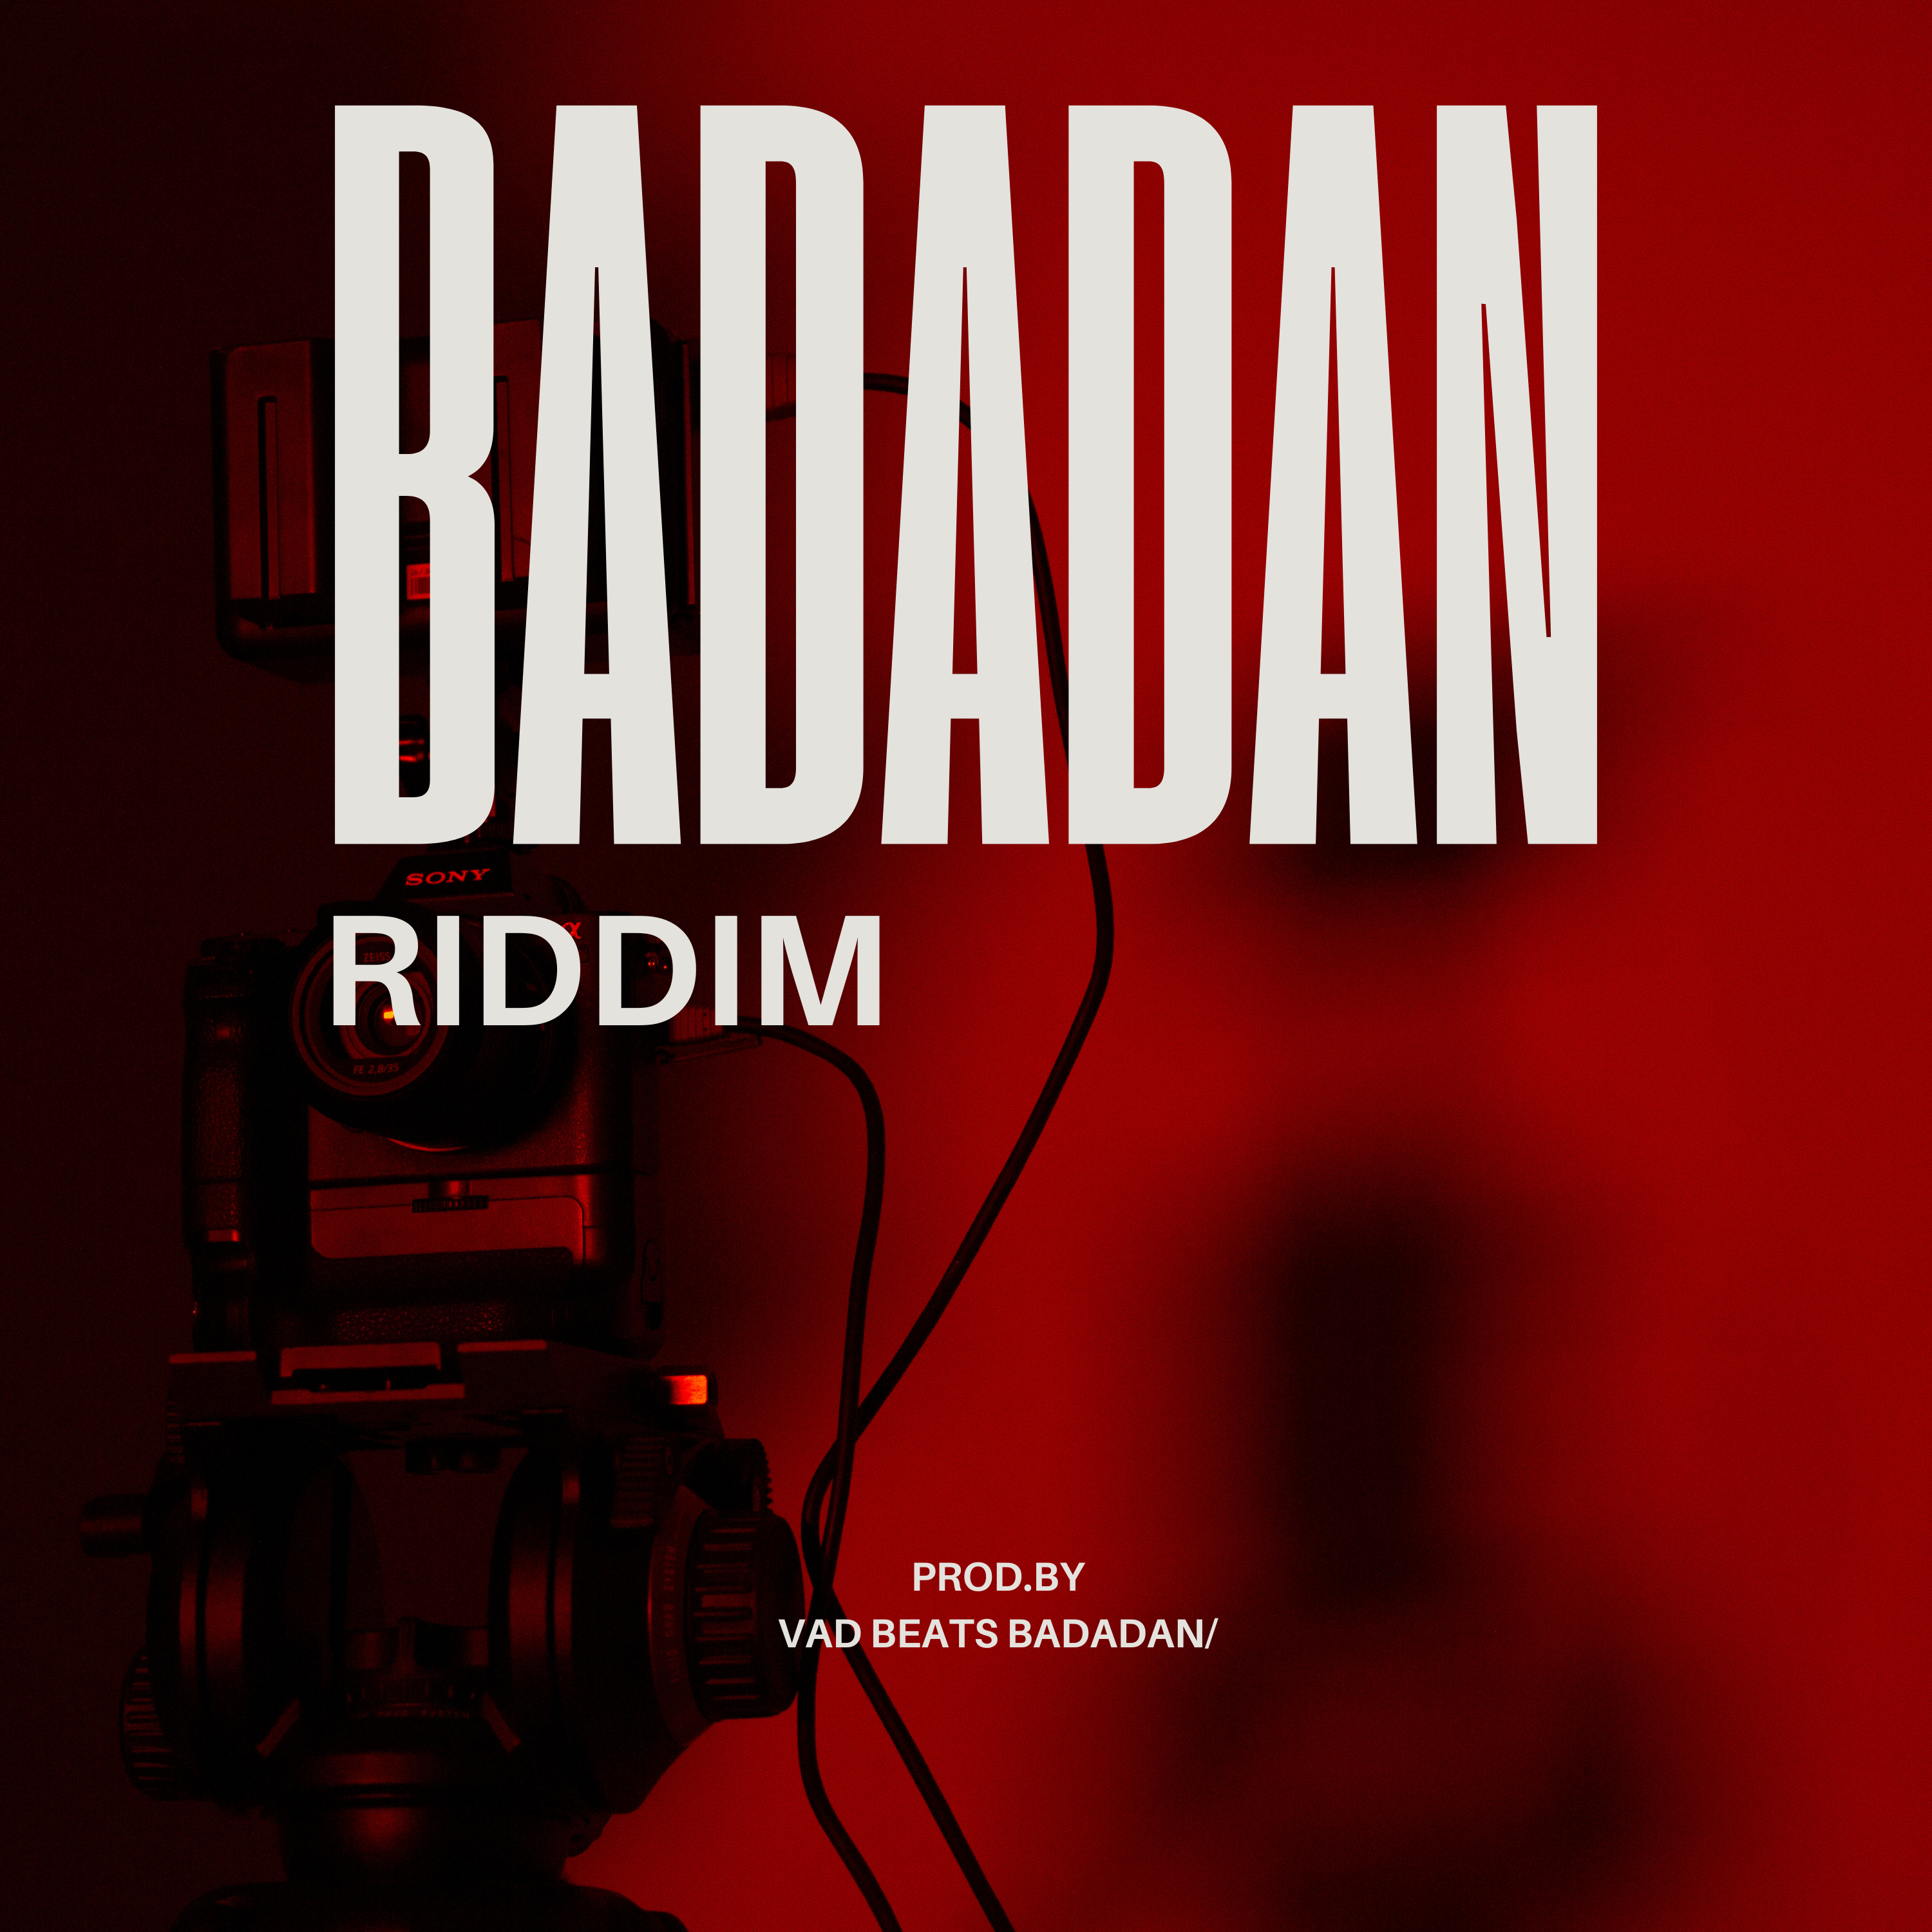 BADADAN RIDDIM VOL - 1